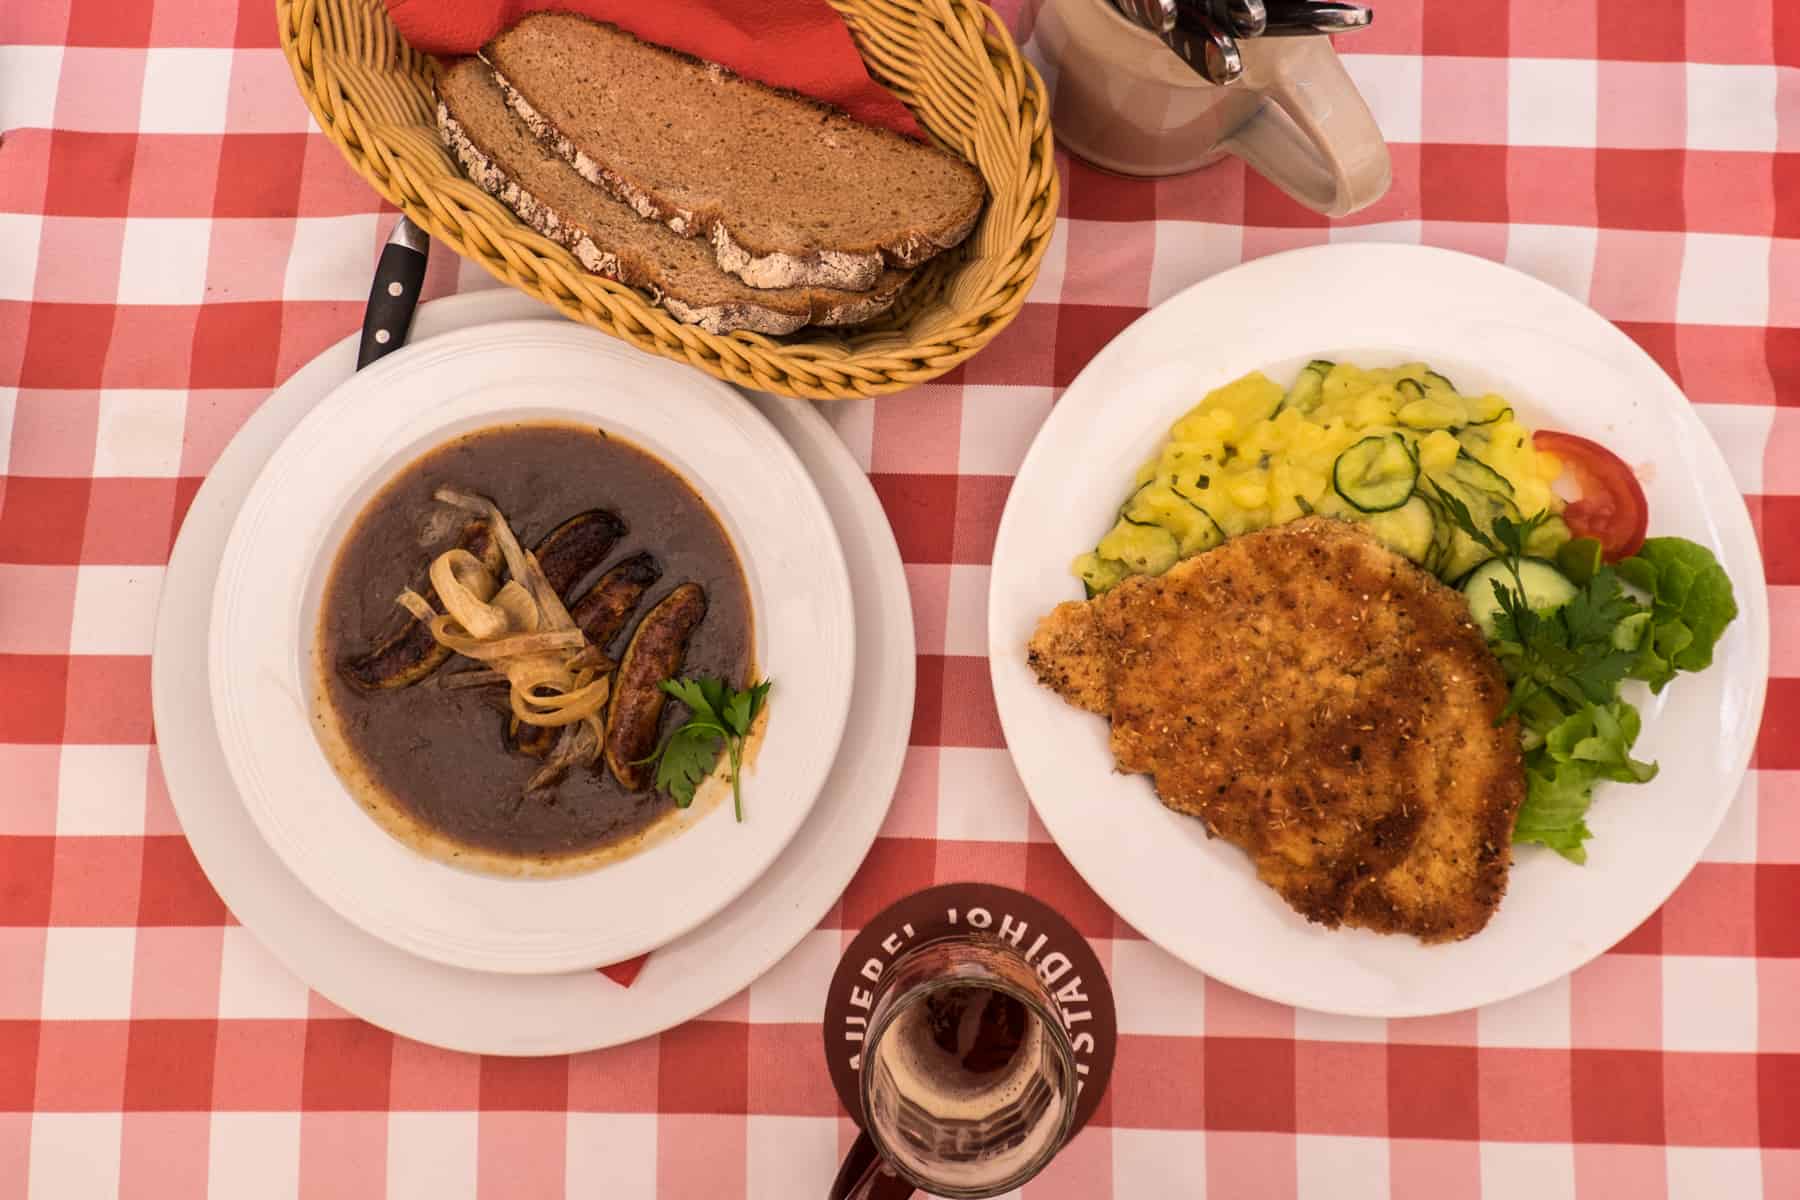 Un mantel a cuadros rojo y blanco lleno de especialidades de comida de Nuremberg: escalope rebozado con cerveza, un plato de salchichas de Nuremberg en salsa, junto con una cesta de pan y una cerveza